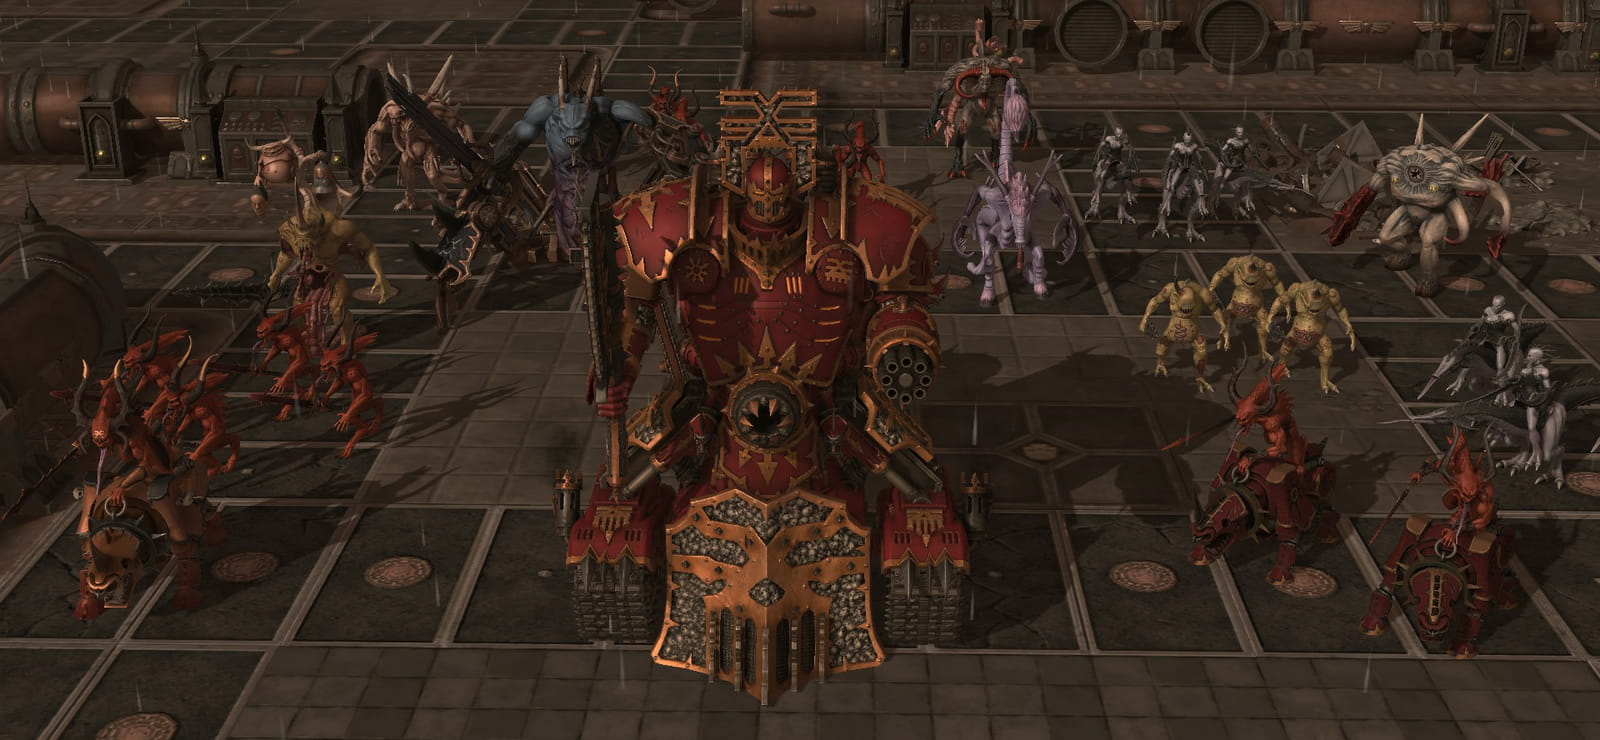 Warhammer 40,000: Sanctus Reach - Horrors Of The Warp